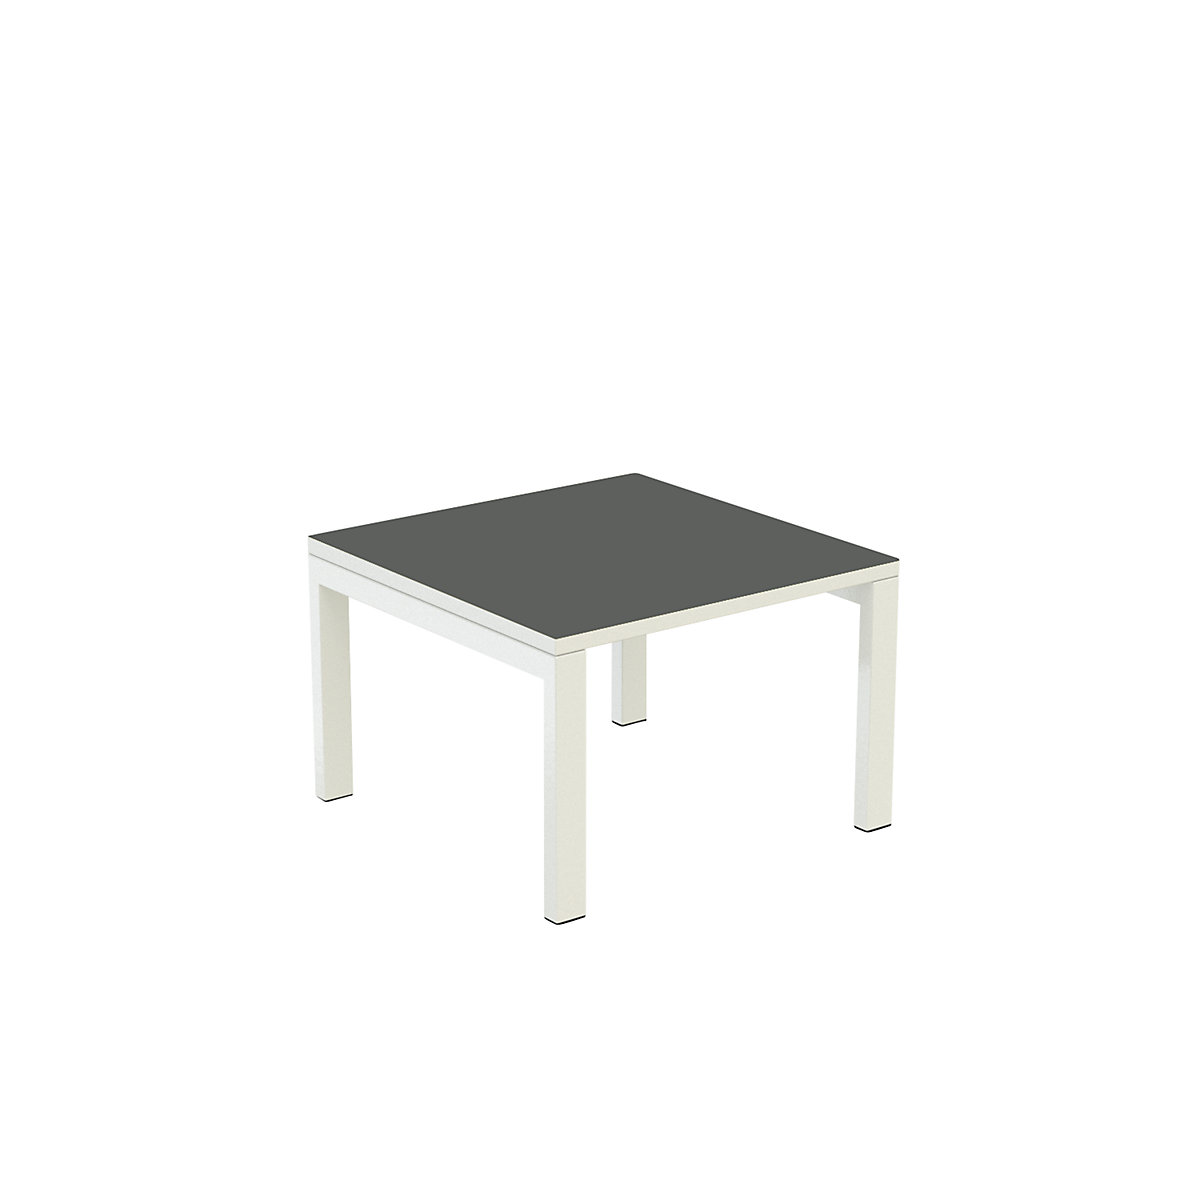 Stół dostawny easyDesk® – Paperflow, wys. x szer. x głęb. 400 x 600 x 600 mm, antracytowy-10